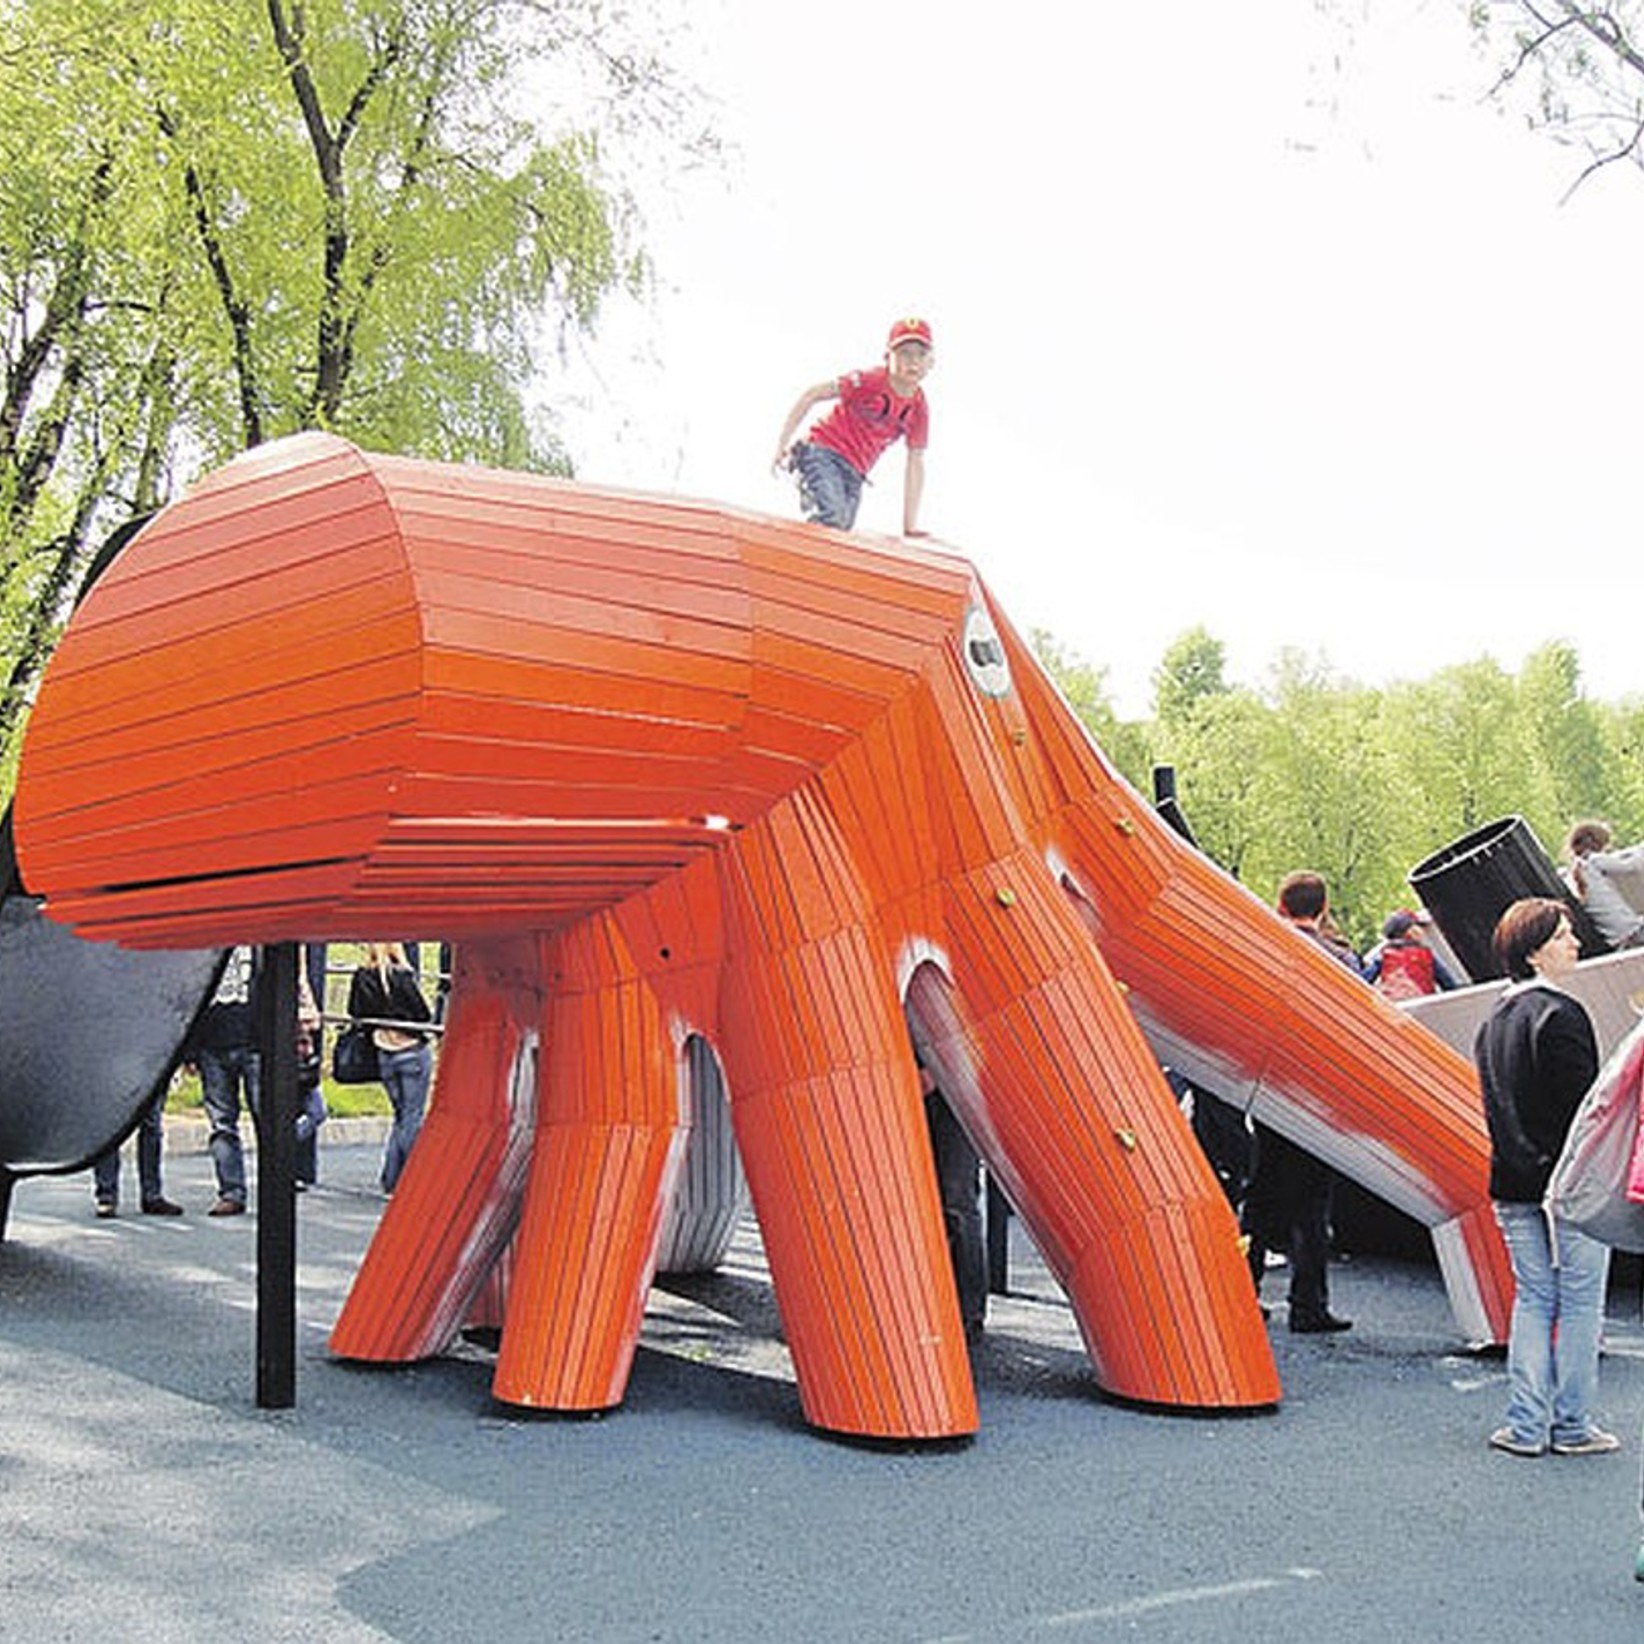 Самая большая площадка в москве. Оригинальные детские площадки. Креативные детские площадки. Интересные детские площадки. Необычные игровые площадки.